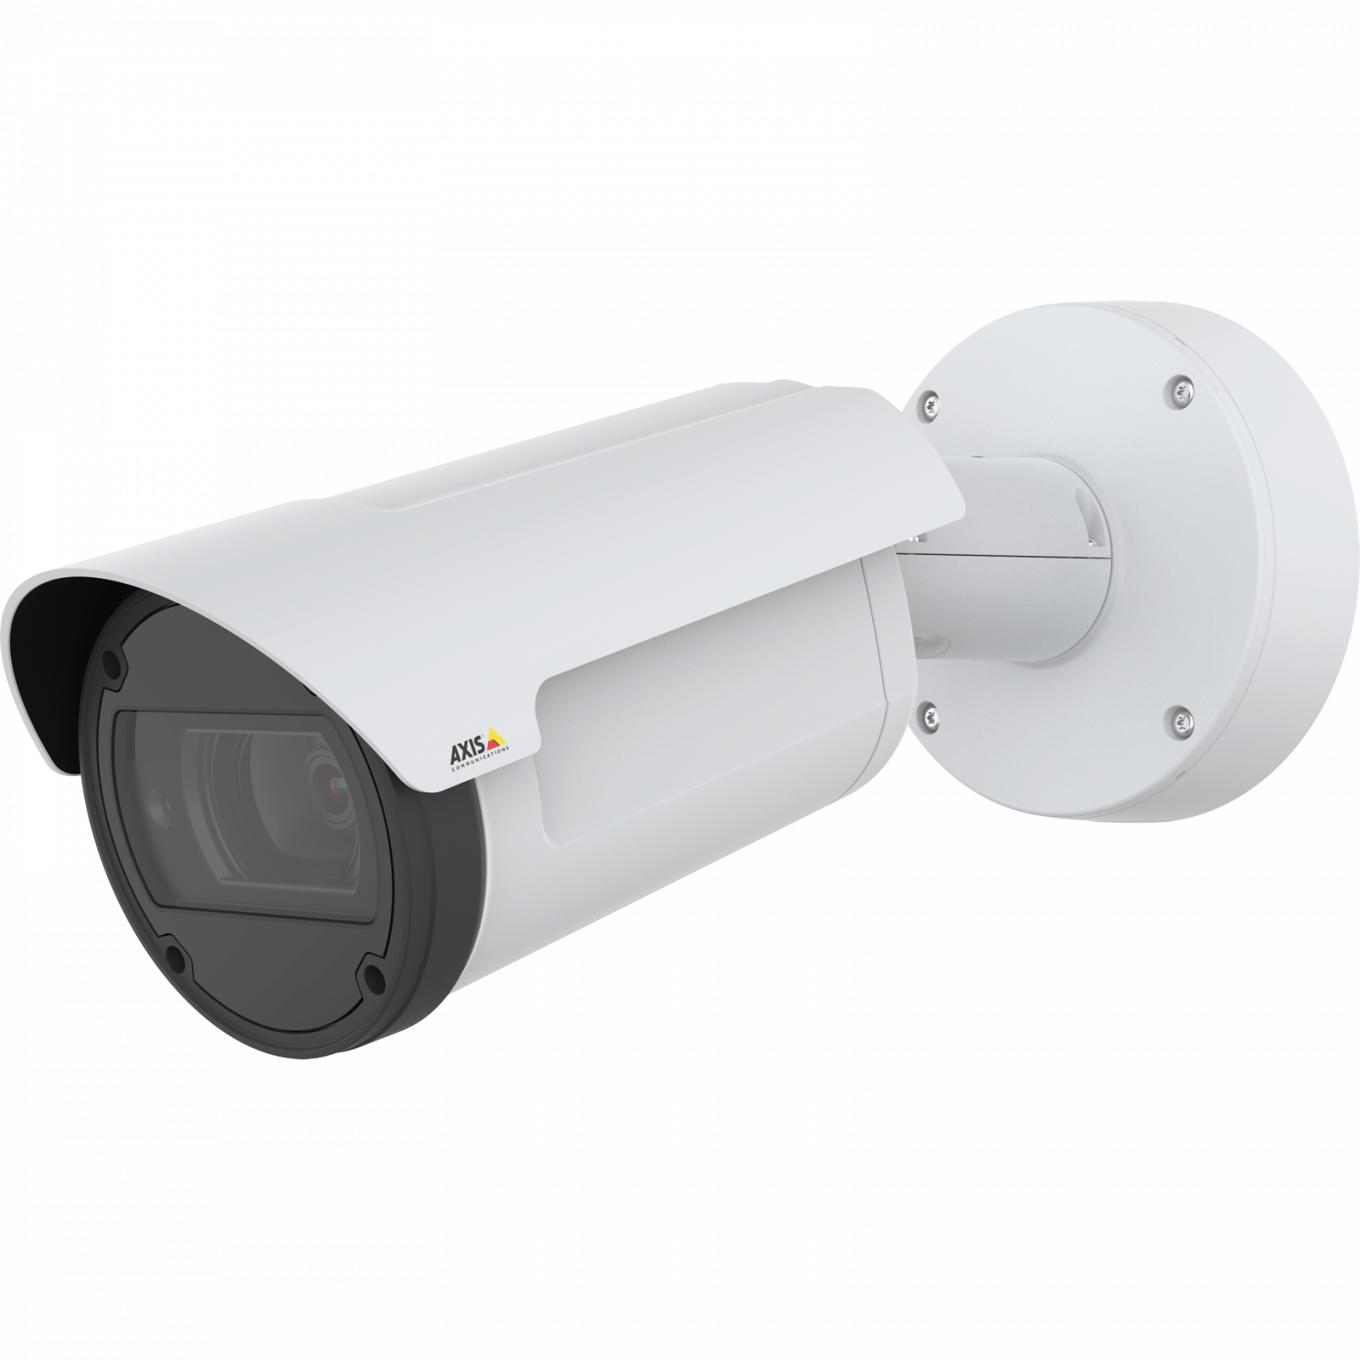 AXIS Q1798-LE IP Camera possui Zipstream e Lightfinder. O produto é visto pelo ângulo esquerdo.